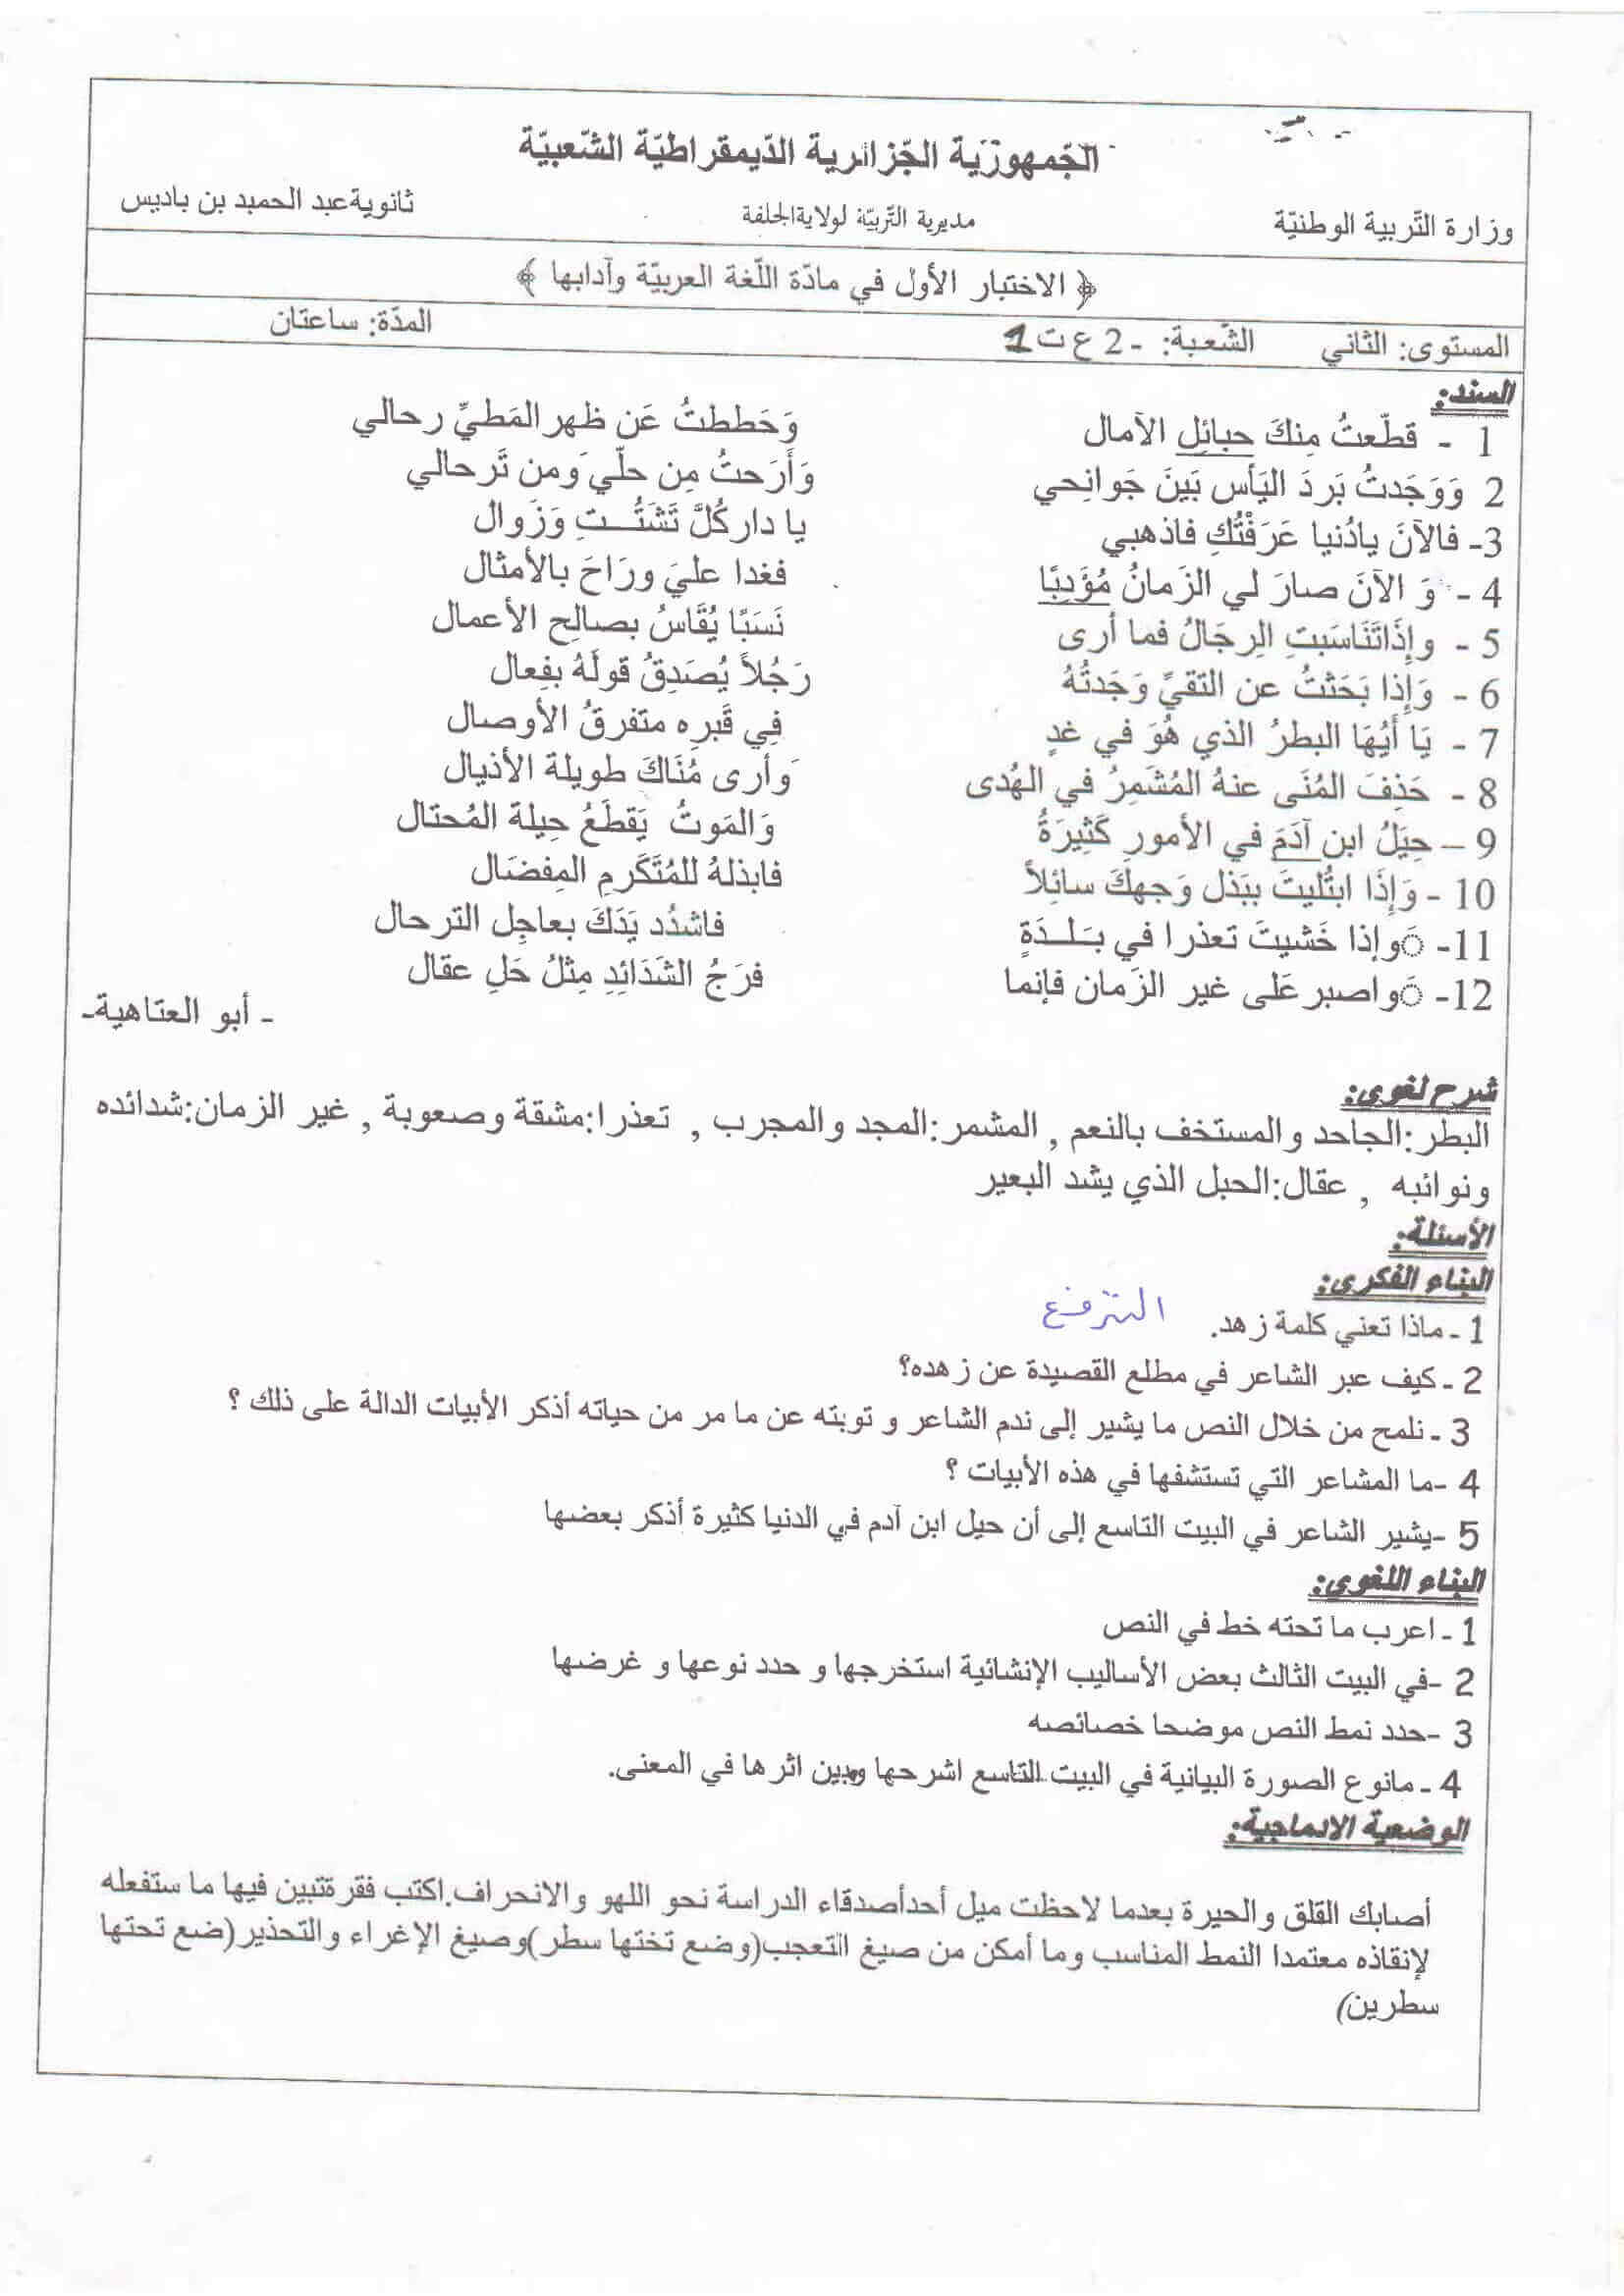 اختبار الفصل الأول في اللغة العربية للسنة ثانية ثانوي النموذج 12